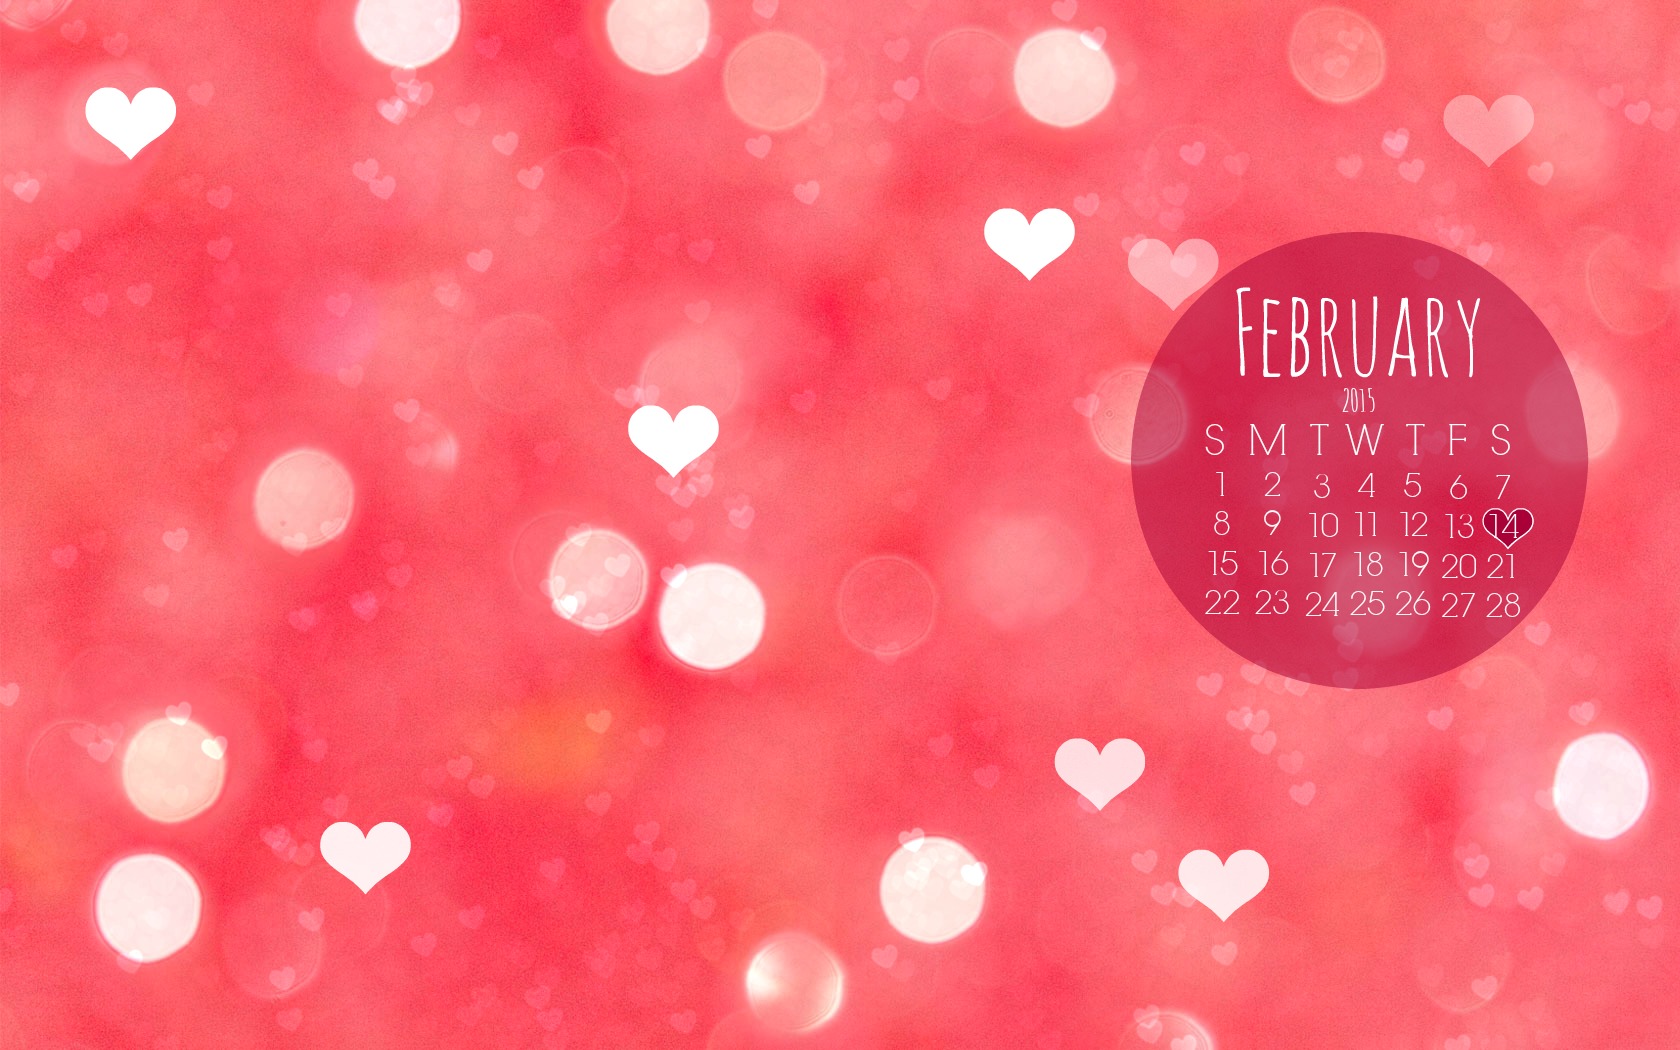 Free Wallpaper Background For February February Calendar Wallpaper